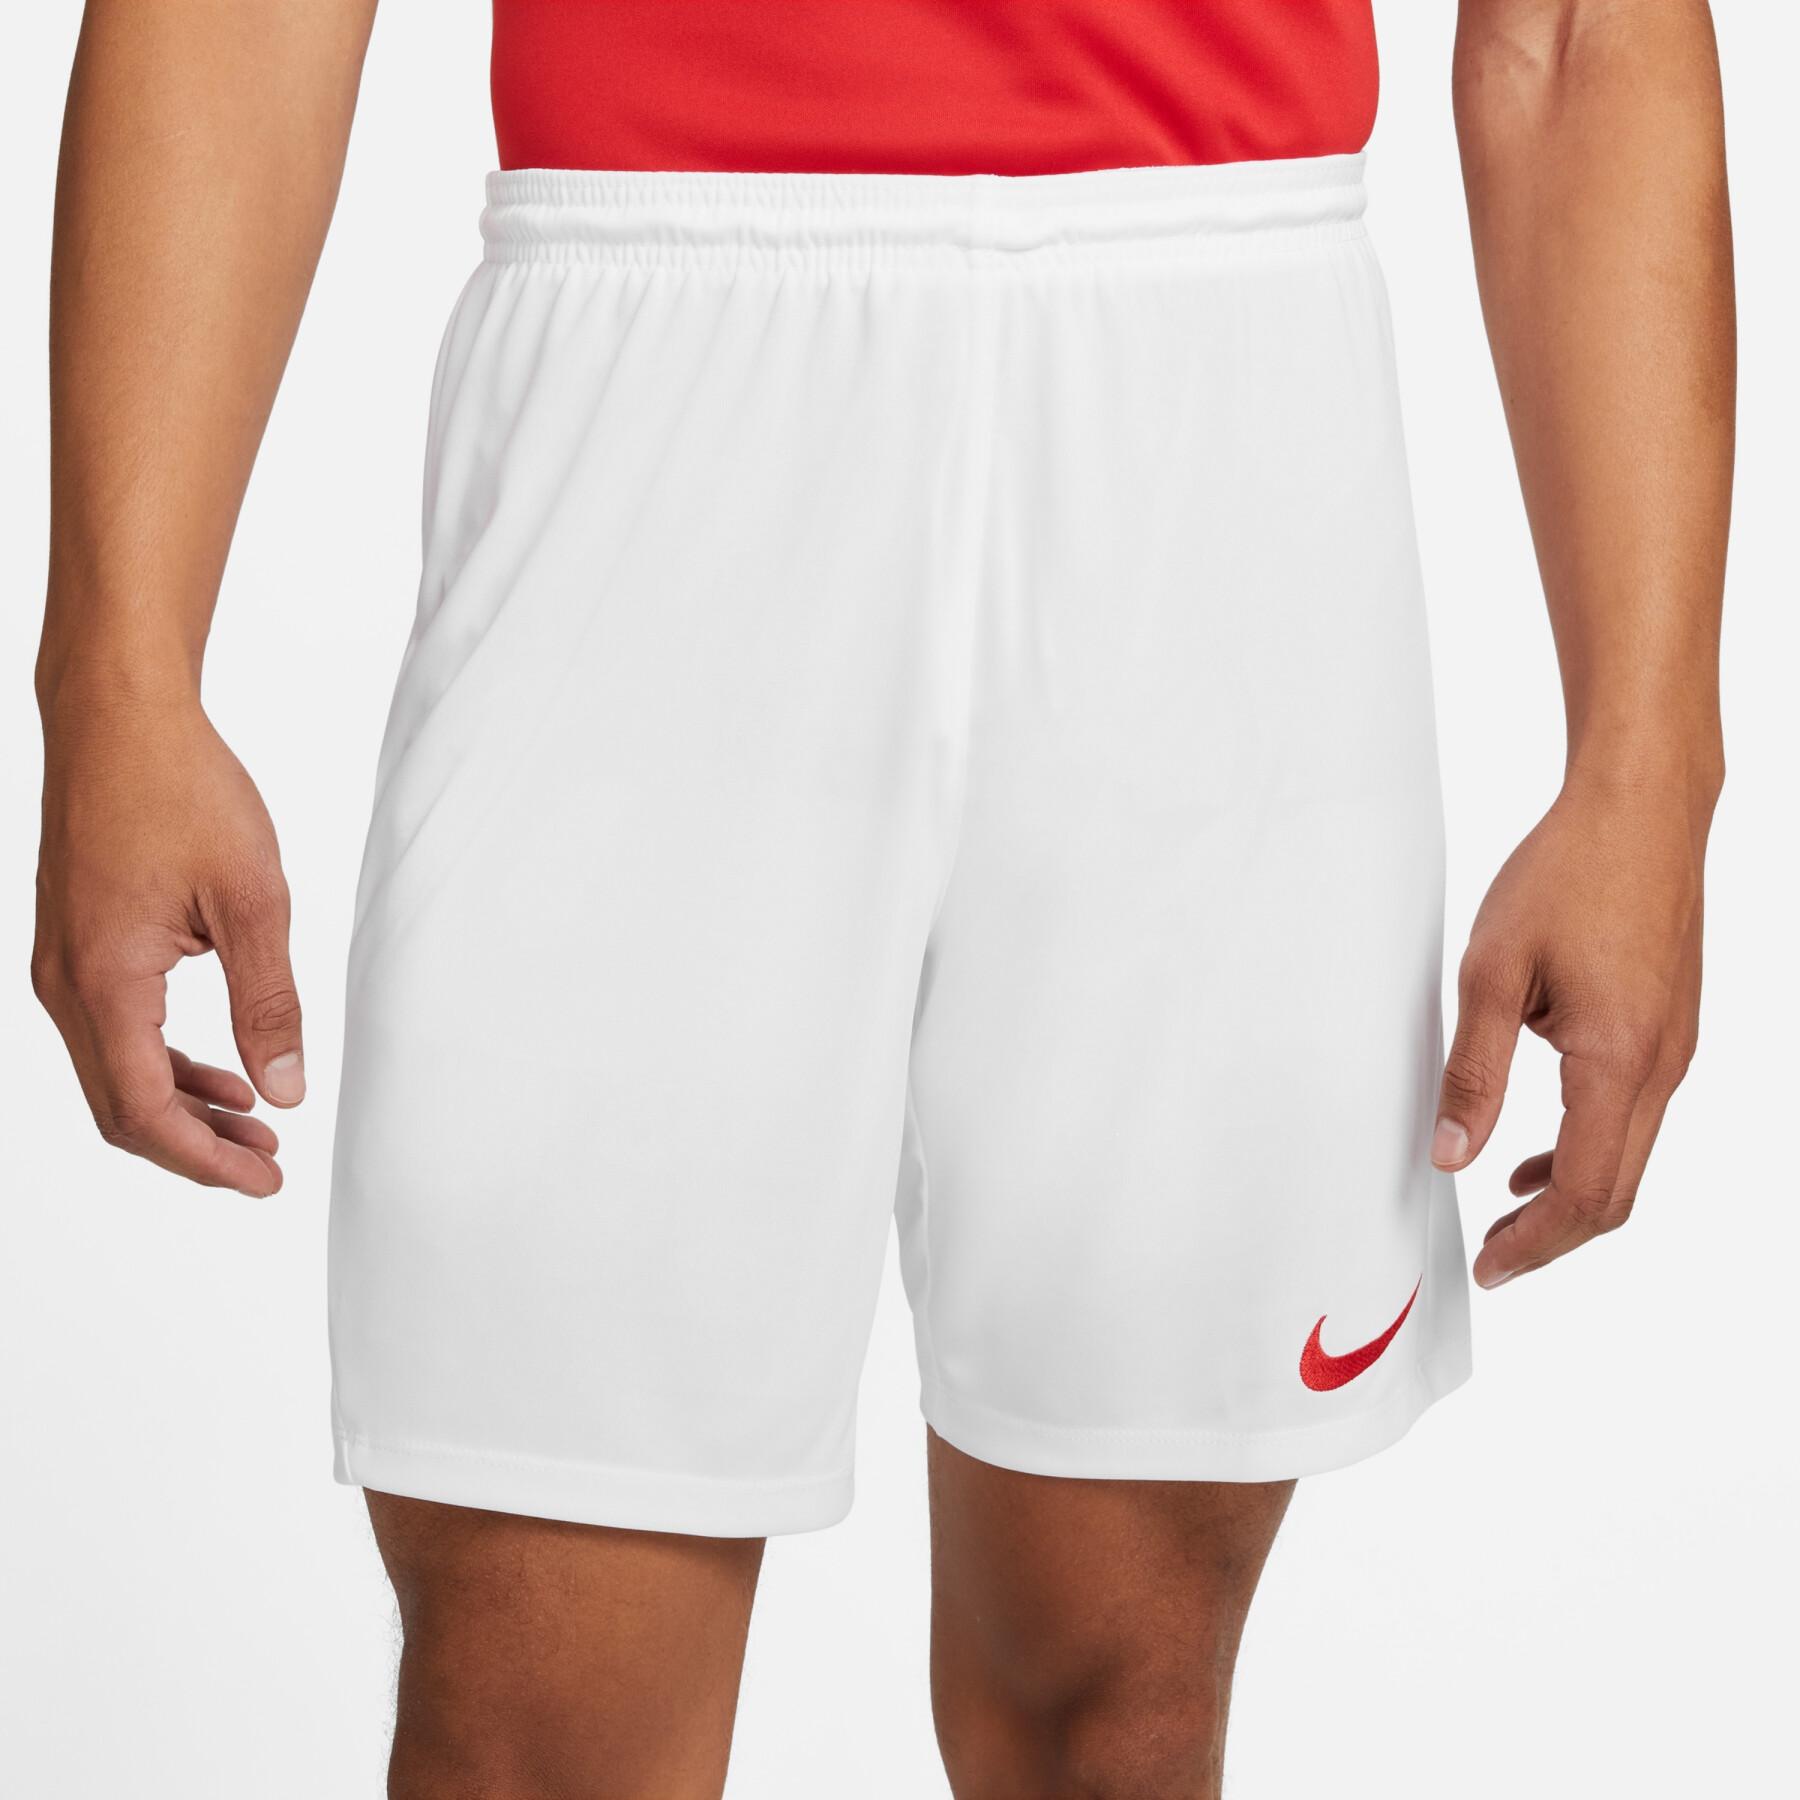 Shorts Nike Dri-FIT Park 3